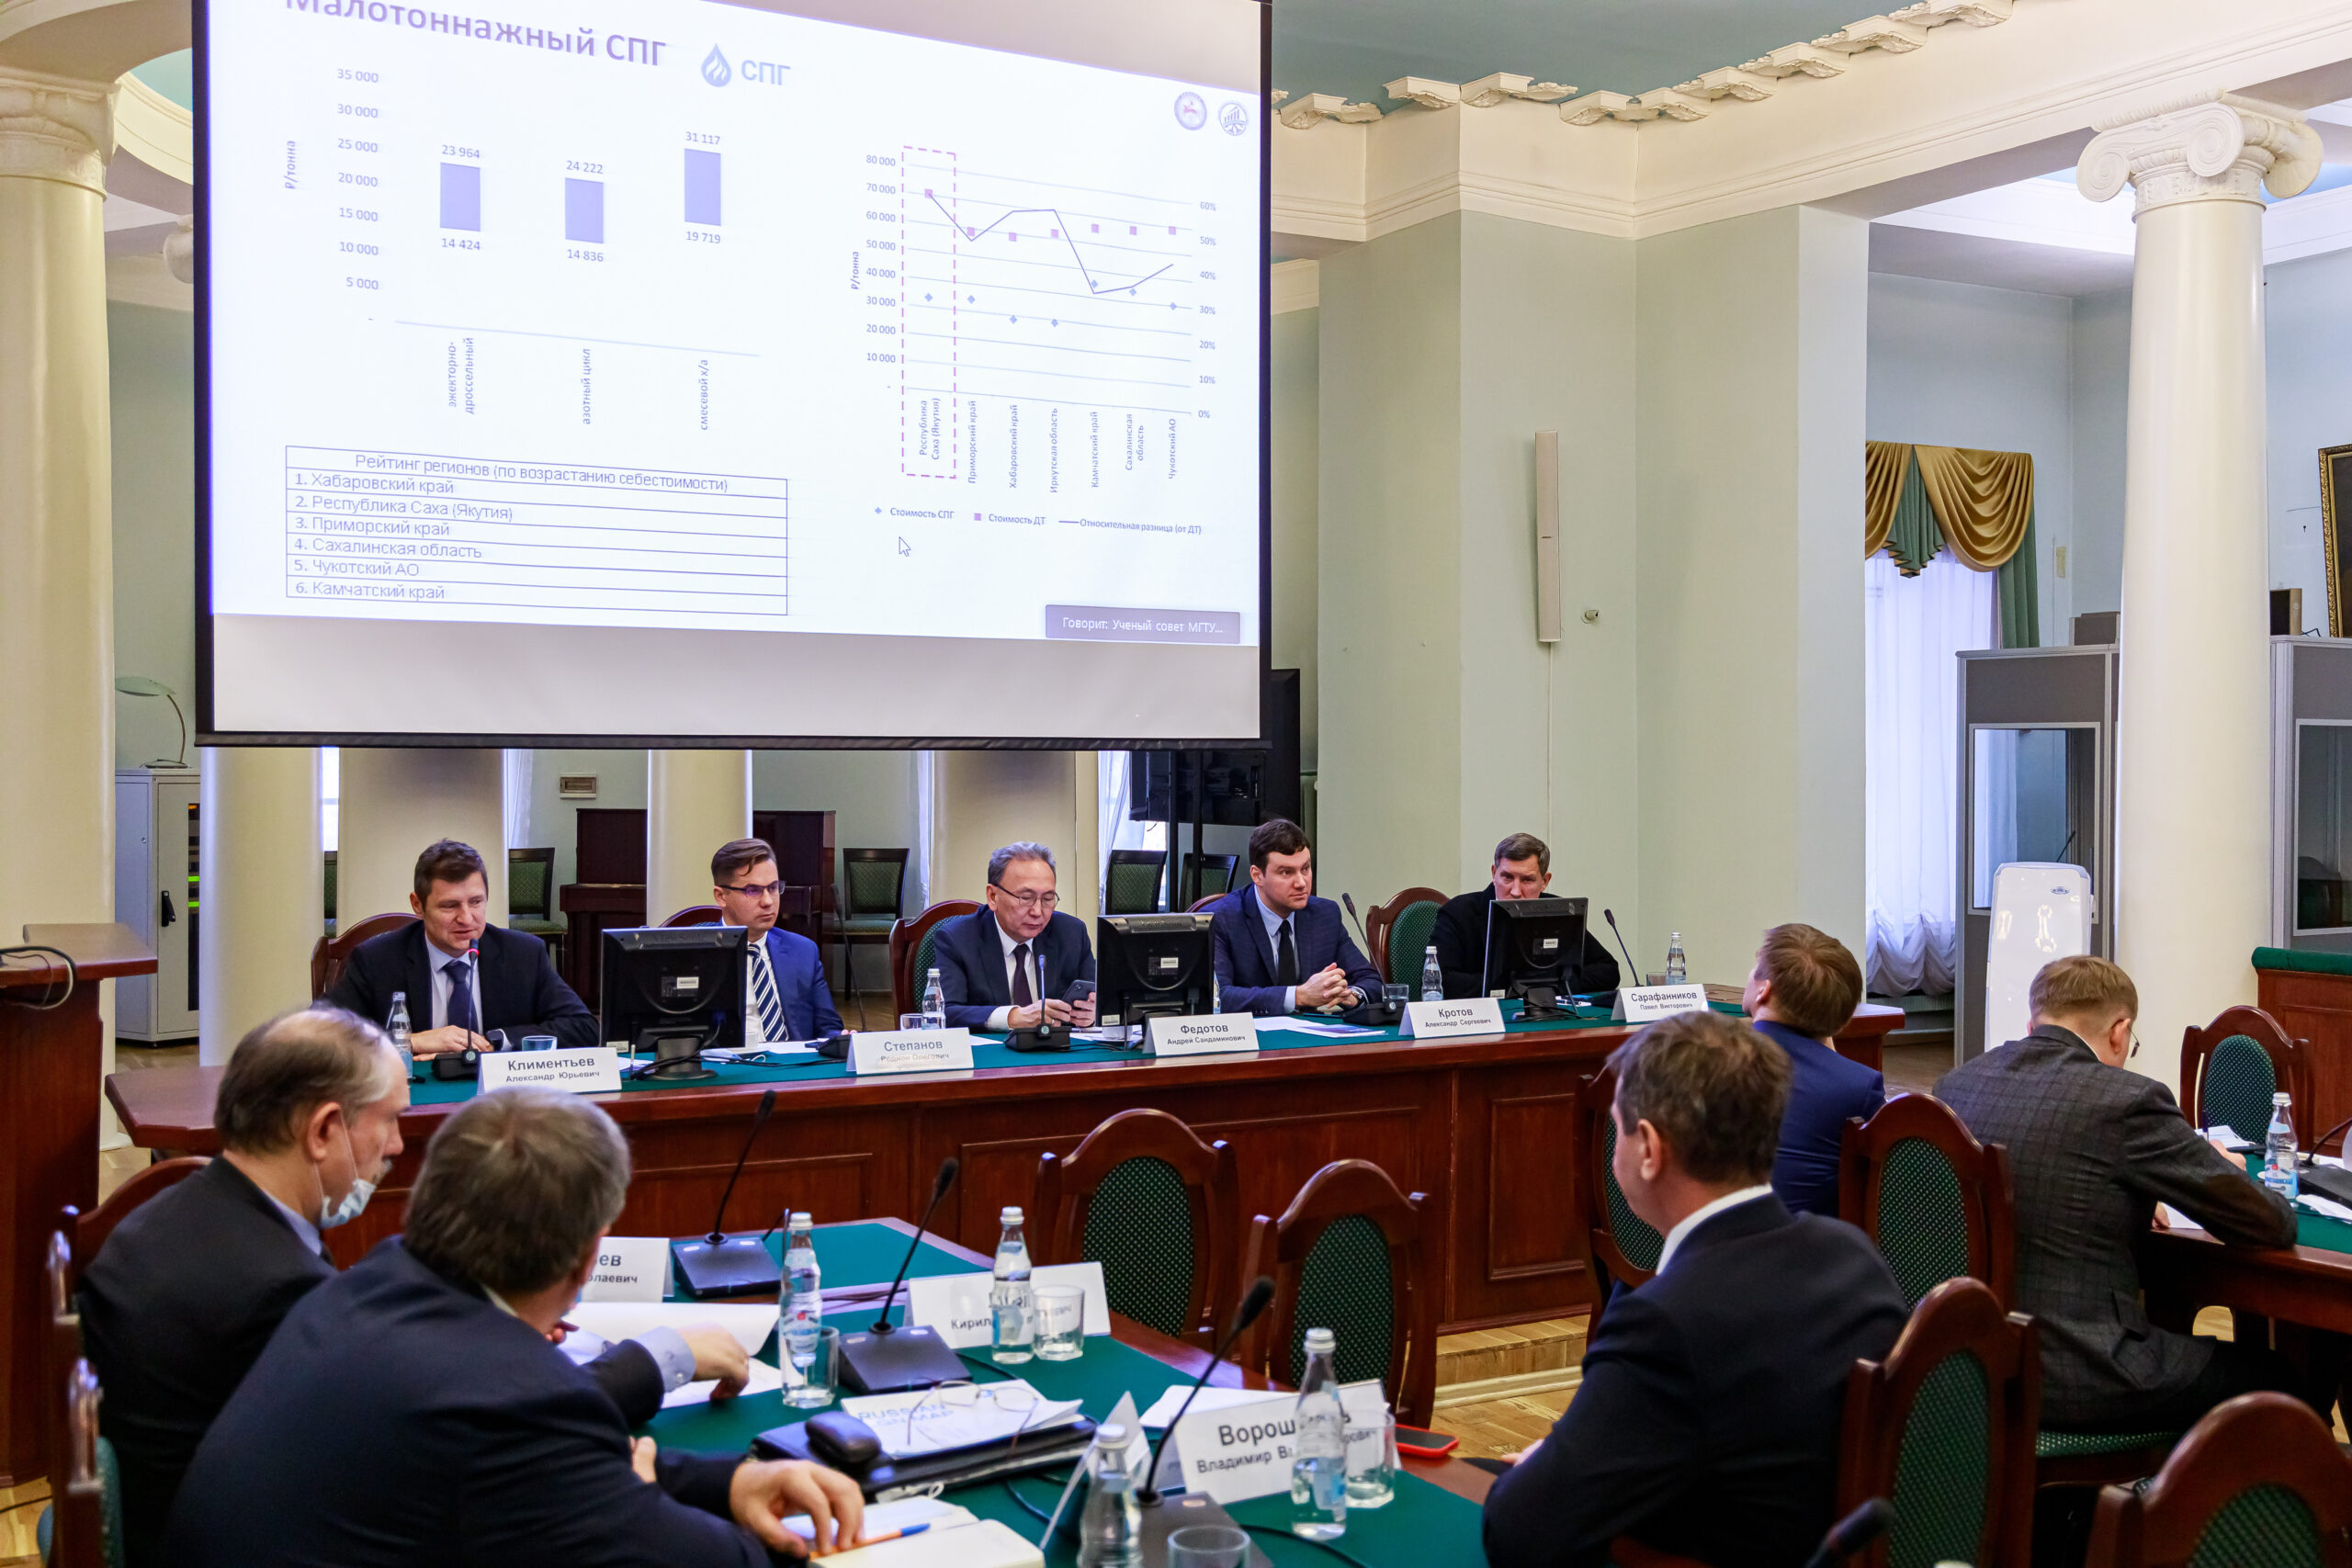 Производство и применение сжиженного природного газа в Якутии обсудили в МГТУ им. Баумана